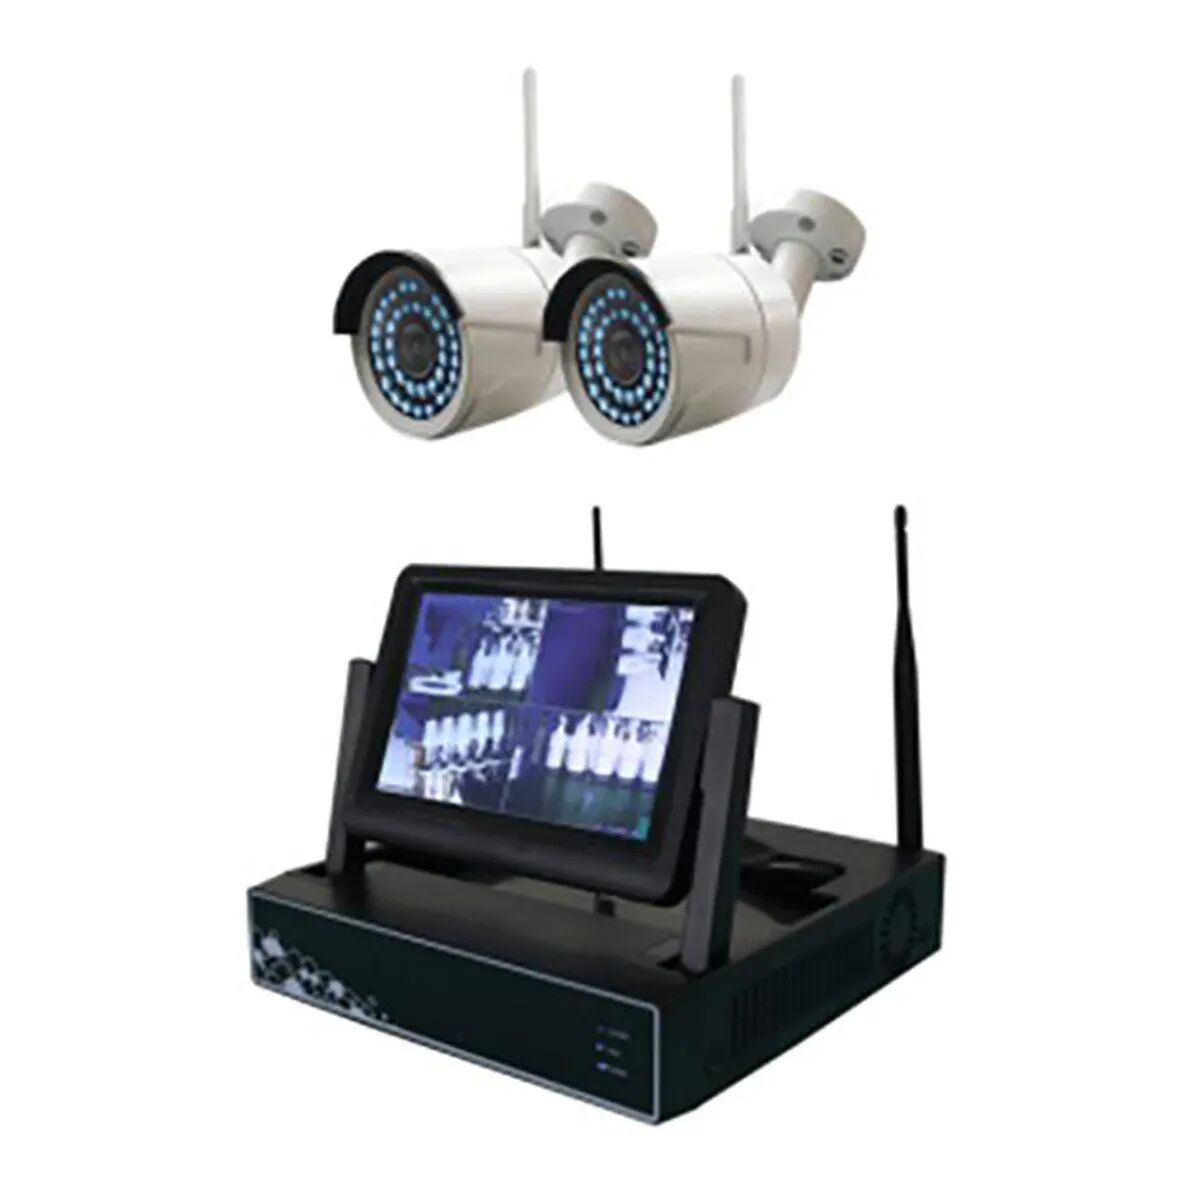 proxe kit tvcc  monitor 7'' 2 telecamere hd 500 gb senza fili con plugplay visibile da remoto